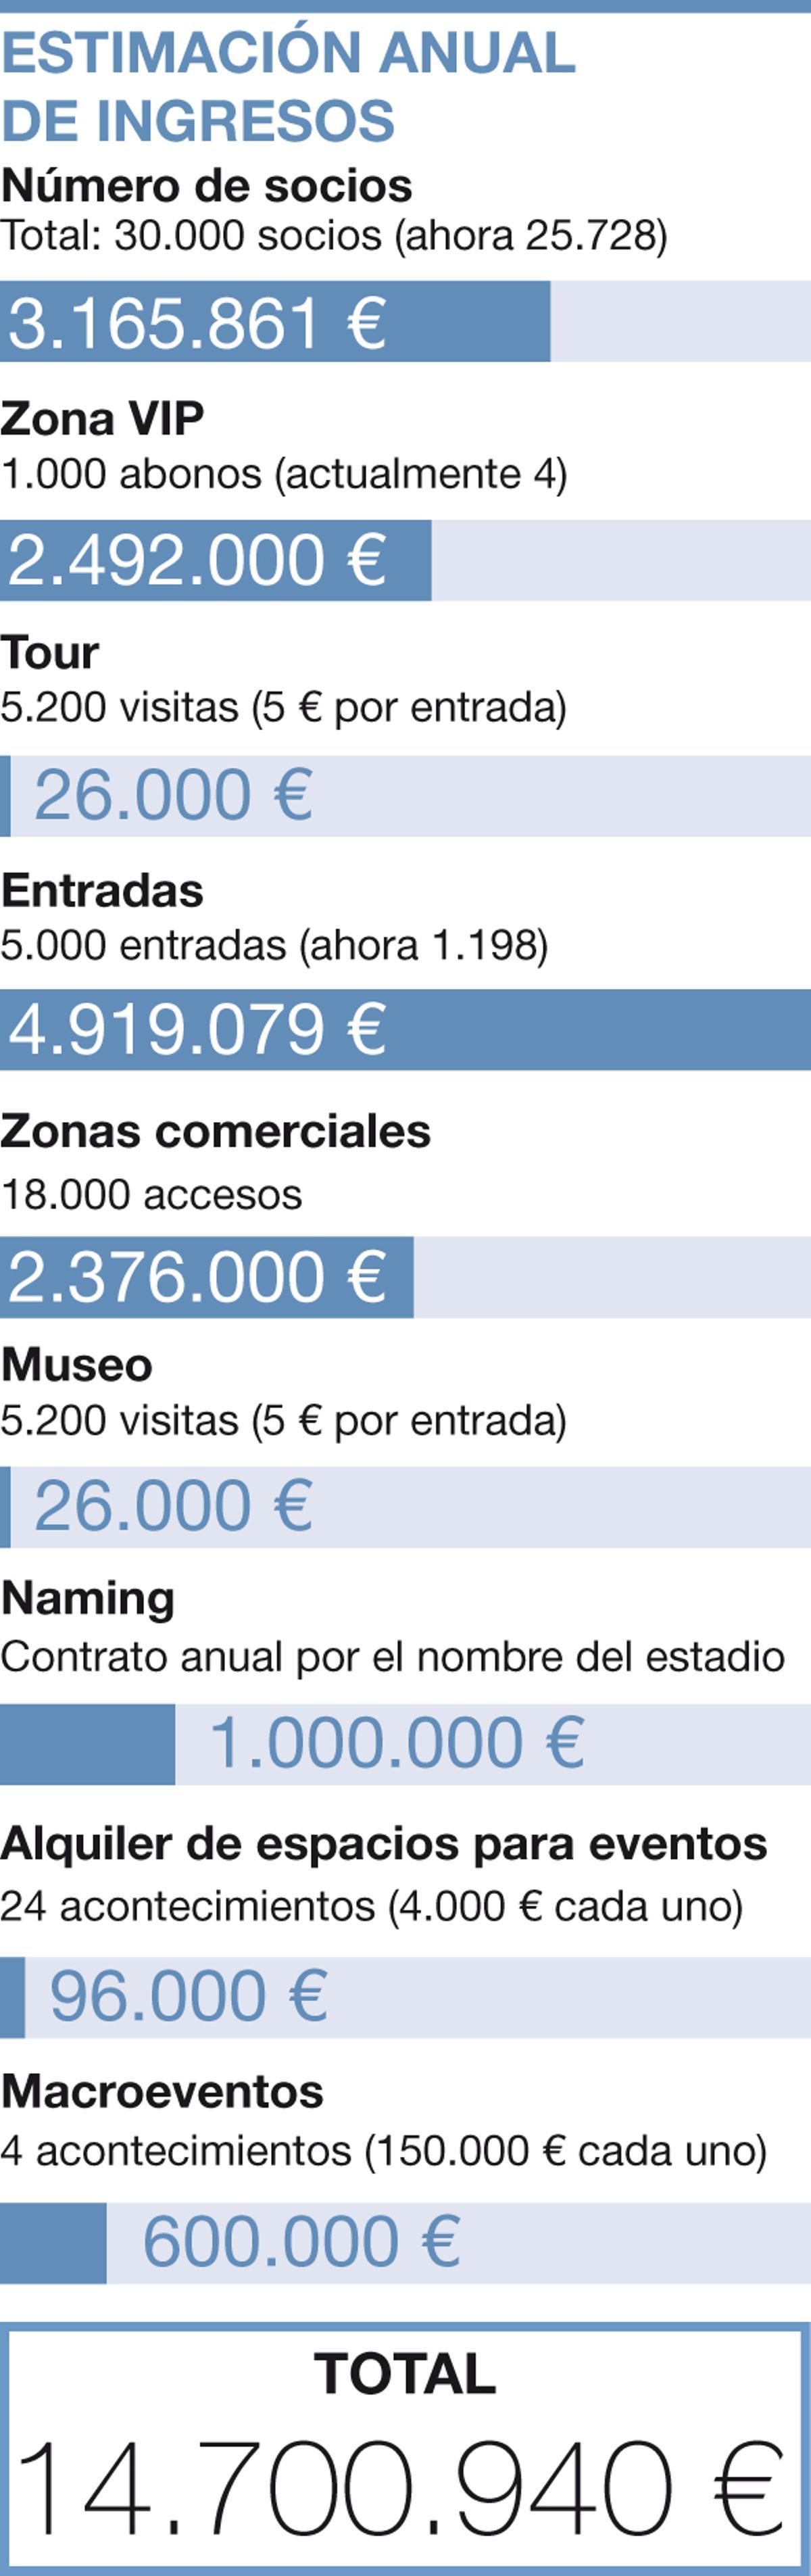 Esta es la estimación anual de ingresos del Real Zaragoza.